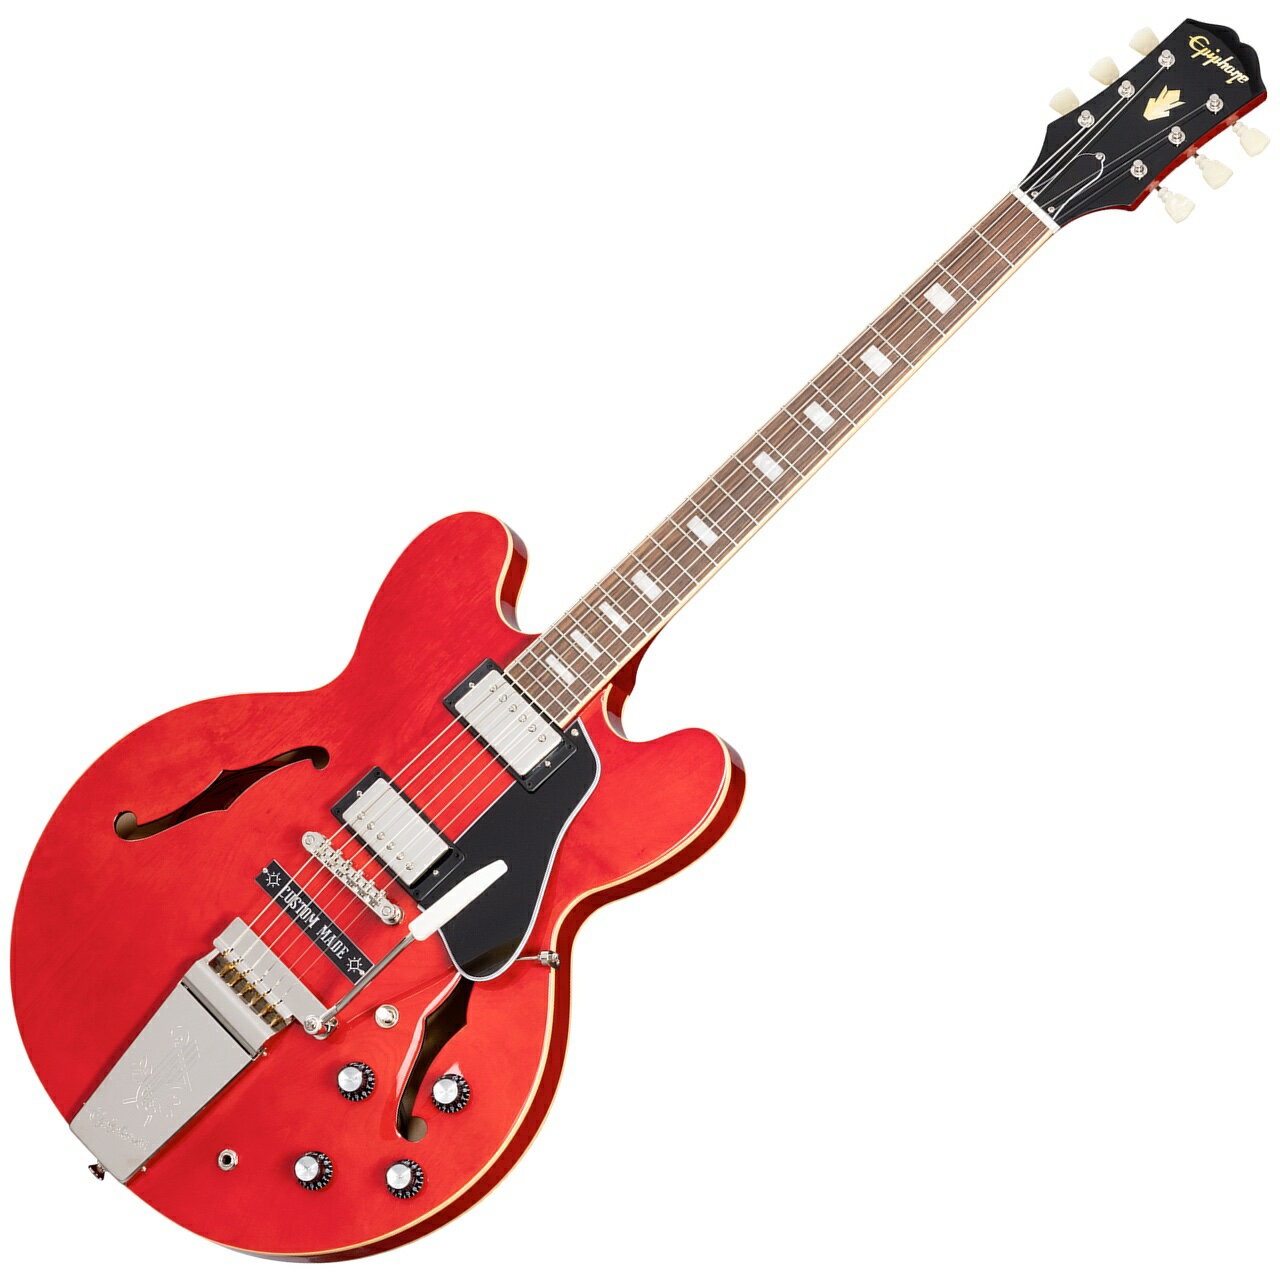 ギターの世界では、ある特定のモデルが他のモデル以上に特別な輝きを放つことがあります。 ジョー・ボナマッサのような世界的なギタリスト/ギターコレクターが所有しプレイしてきたモデルとなれば、そのモデルは特別感を帯びるようになるのです。 1996年、ジョーは1962年製でレッド・フィニッシュの ES 335を購入し、最初のソロアルバム &ldquo;A New Day Yesterday&rdquo; の収録で使用しました。ところが2001年、ニューヨークからロサンゼルスへの引っ越し資金のため、彼は泣く泣くそのギターを手放してしまいました。その後、ジョーの最初のアルバムから20周年となるタイミングで、偶然にも運命的な予期せぬ電話がジョーのもとにかかってきました。こうして、ファースト・ソロアルバムで活躍し西海岸での活動へと導いた、あのレッド・フィニッシュのES-335がジョーの手許に再び収まることとなりました。再び手に入れることができた幸運を噛みしめながら、ジョーは、生涯このギターを手許に置いておくことを誓いました。 エピフォン ジョー・ボナマッサ 1962 ES-335は、伝説的ギタリストであるジョーと彼の愛器に敬意を表して製作されました。1ピース・マホガニー・ネック、インディアン・ローレル指板、丸みを帯びたラウンディドC ネックプロファイル、ギブソン バーストバッカー　タイプ2/タイプ3 ピックアップ、CTSポテンショミーターとマロリー・キャパシター、スイッチクラフト製ピックアップ・セレクター・トグルスイッチとアウトプット・ジャック、マエストロ・バイブローラを搭載。エピフォンとジョー・ボナマッサのデザインが施された特製ハードケース、特製認定書が付属となります。 画像はメーカー画像です。お届けの商品とは仕様や木目・色合いが異る場合があります。 他のサイトでも販売しています。買い物かごに入れても売り切れの場合がございますのであらかじめご了承下さいませ。 Body Material Top&nbsp; 5-ply Layered Maple Back&nbsp; 5-ply Layered Maple Side&nbsp; 5-ply Layered Maple Bracing&nbsp; Spruce Contour Brace Centerblock&nbsp; Maple Binding&nbsp; Single Ply Cream; Top, Back, and Fretboard Body Finish&nbsp; Gloss Neck Profile&nbsp; Rounded &quot;C&quot; Scale Length&nbsp; 628.65 mm / 24.75 in Fingerboard Material&nbsp; Indian Laurel Fingerboard Radius&nbsp; 304.8 mm / 12 in Fret Count&nbsp; 22 Frets&nbsp; Medium Jumbo Nut Material&nbsp; Graph Tech Nut Width&nbsp; 43.0 mm / 1.692 in Inlays&nbsp; Small Block Joint&nbsp; Glued In, Set Neck Bridge&nbsp; Epiphone LockTone Tune-O-Matic Tailpiece&nbsp; Maestro Vibrola Tuning Machines&nbsp; Epiphone Deluxe with Double Ring Button Neck Pickup&nbsp; Gibson Burstbucker 2 Bridge Pickup&nbsp; Gibson Burstbucker 3 Controls&nbsp; 2 Volume, 2 Tone; CTS Potentiometers, Mallory Capacitors Pickup Selector3-Way Switchcraft Toggle Output Jack&nbsp; 1/4&quot; Switchcraft Strings Gauge&nbsp; .010, .013, .017, .026, .036, .046 &nbsp;